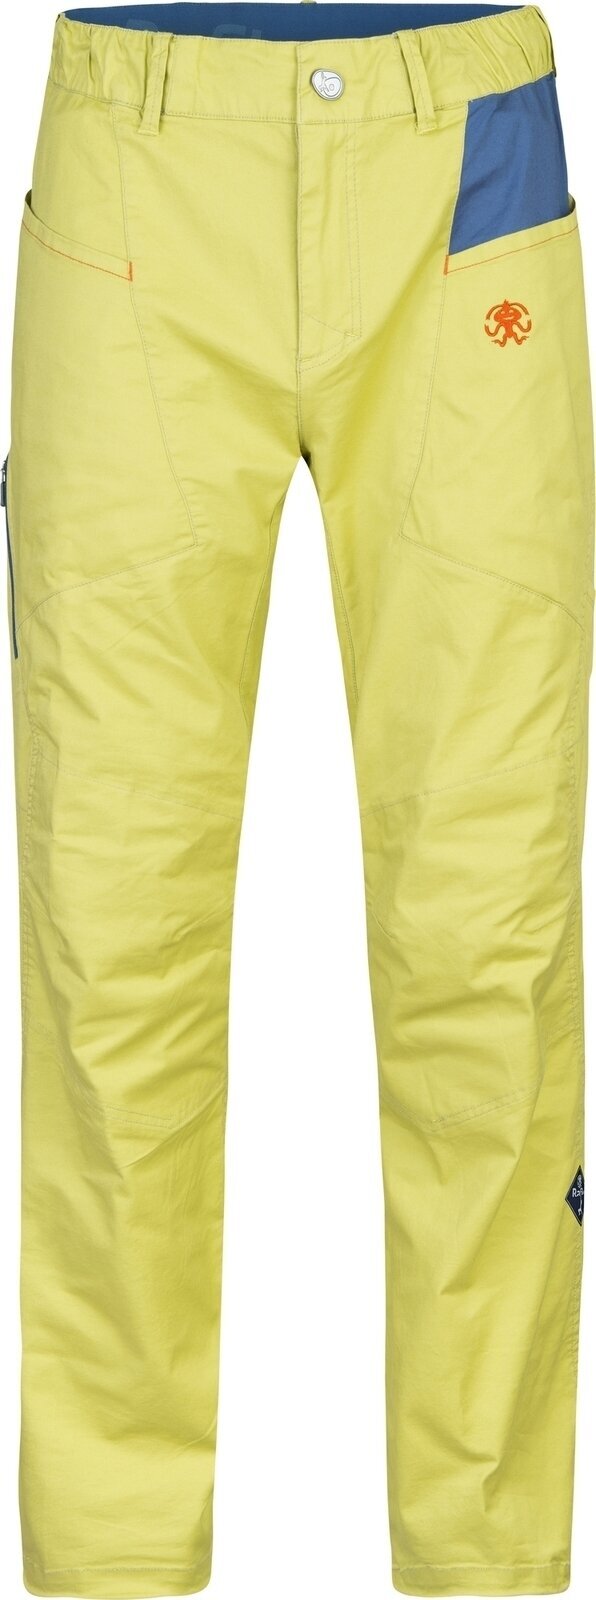 Pantalons outdoor Rafiki Crag Man Pants Cress Green/Ensign L Pantalons outdoor